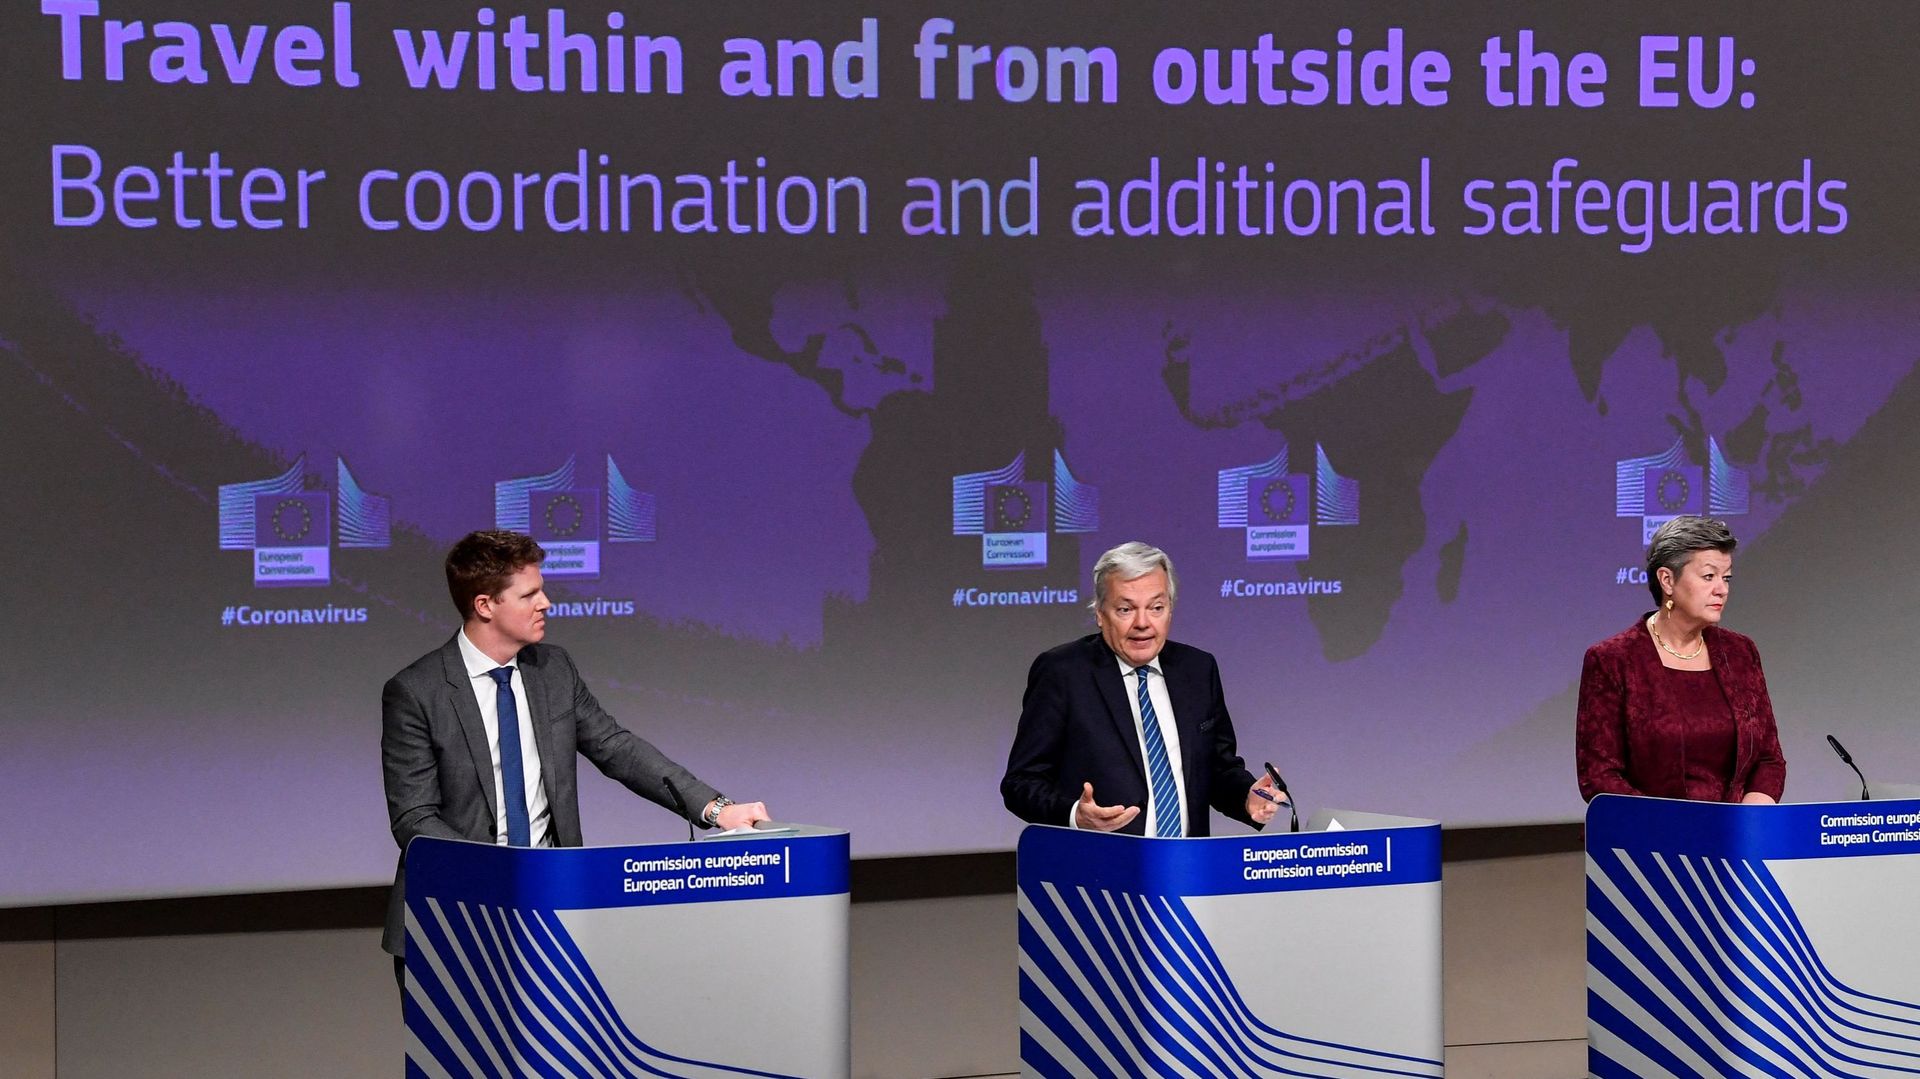 Le commissaire européen à la justice Didier Reynders et la commissaire européenne aux affaires intérieures de la Suède Ylva Johansson s'expriment lors d'une conférence de presse sur les voyages à l'intérieur et à l'extérieur de l'UE: meilleure coordinatio